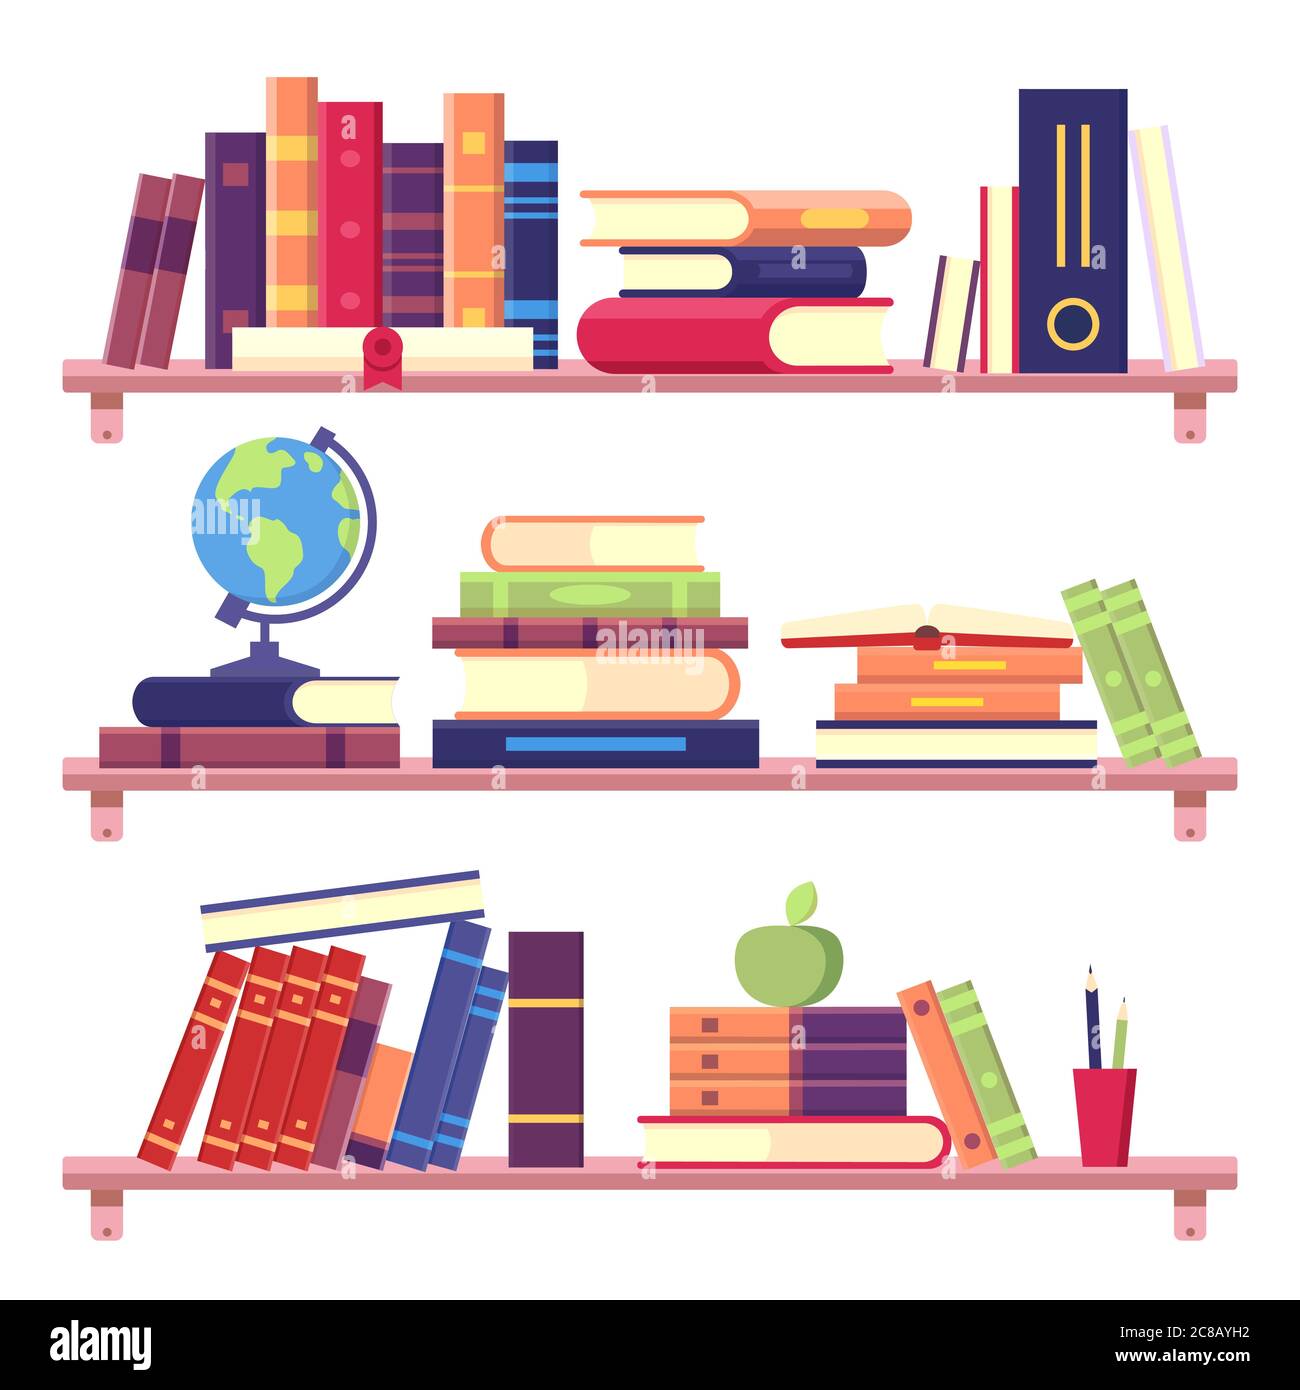 Bücherregale mit Stapel von Büchern und anderen Gegenständen wie Binder, Globus, Apfel und Bleistiften. Home Bibliothek an der Wand. Bildung und Literatur Konzept zu lesen Stock Vektor